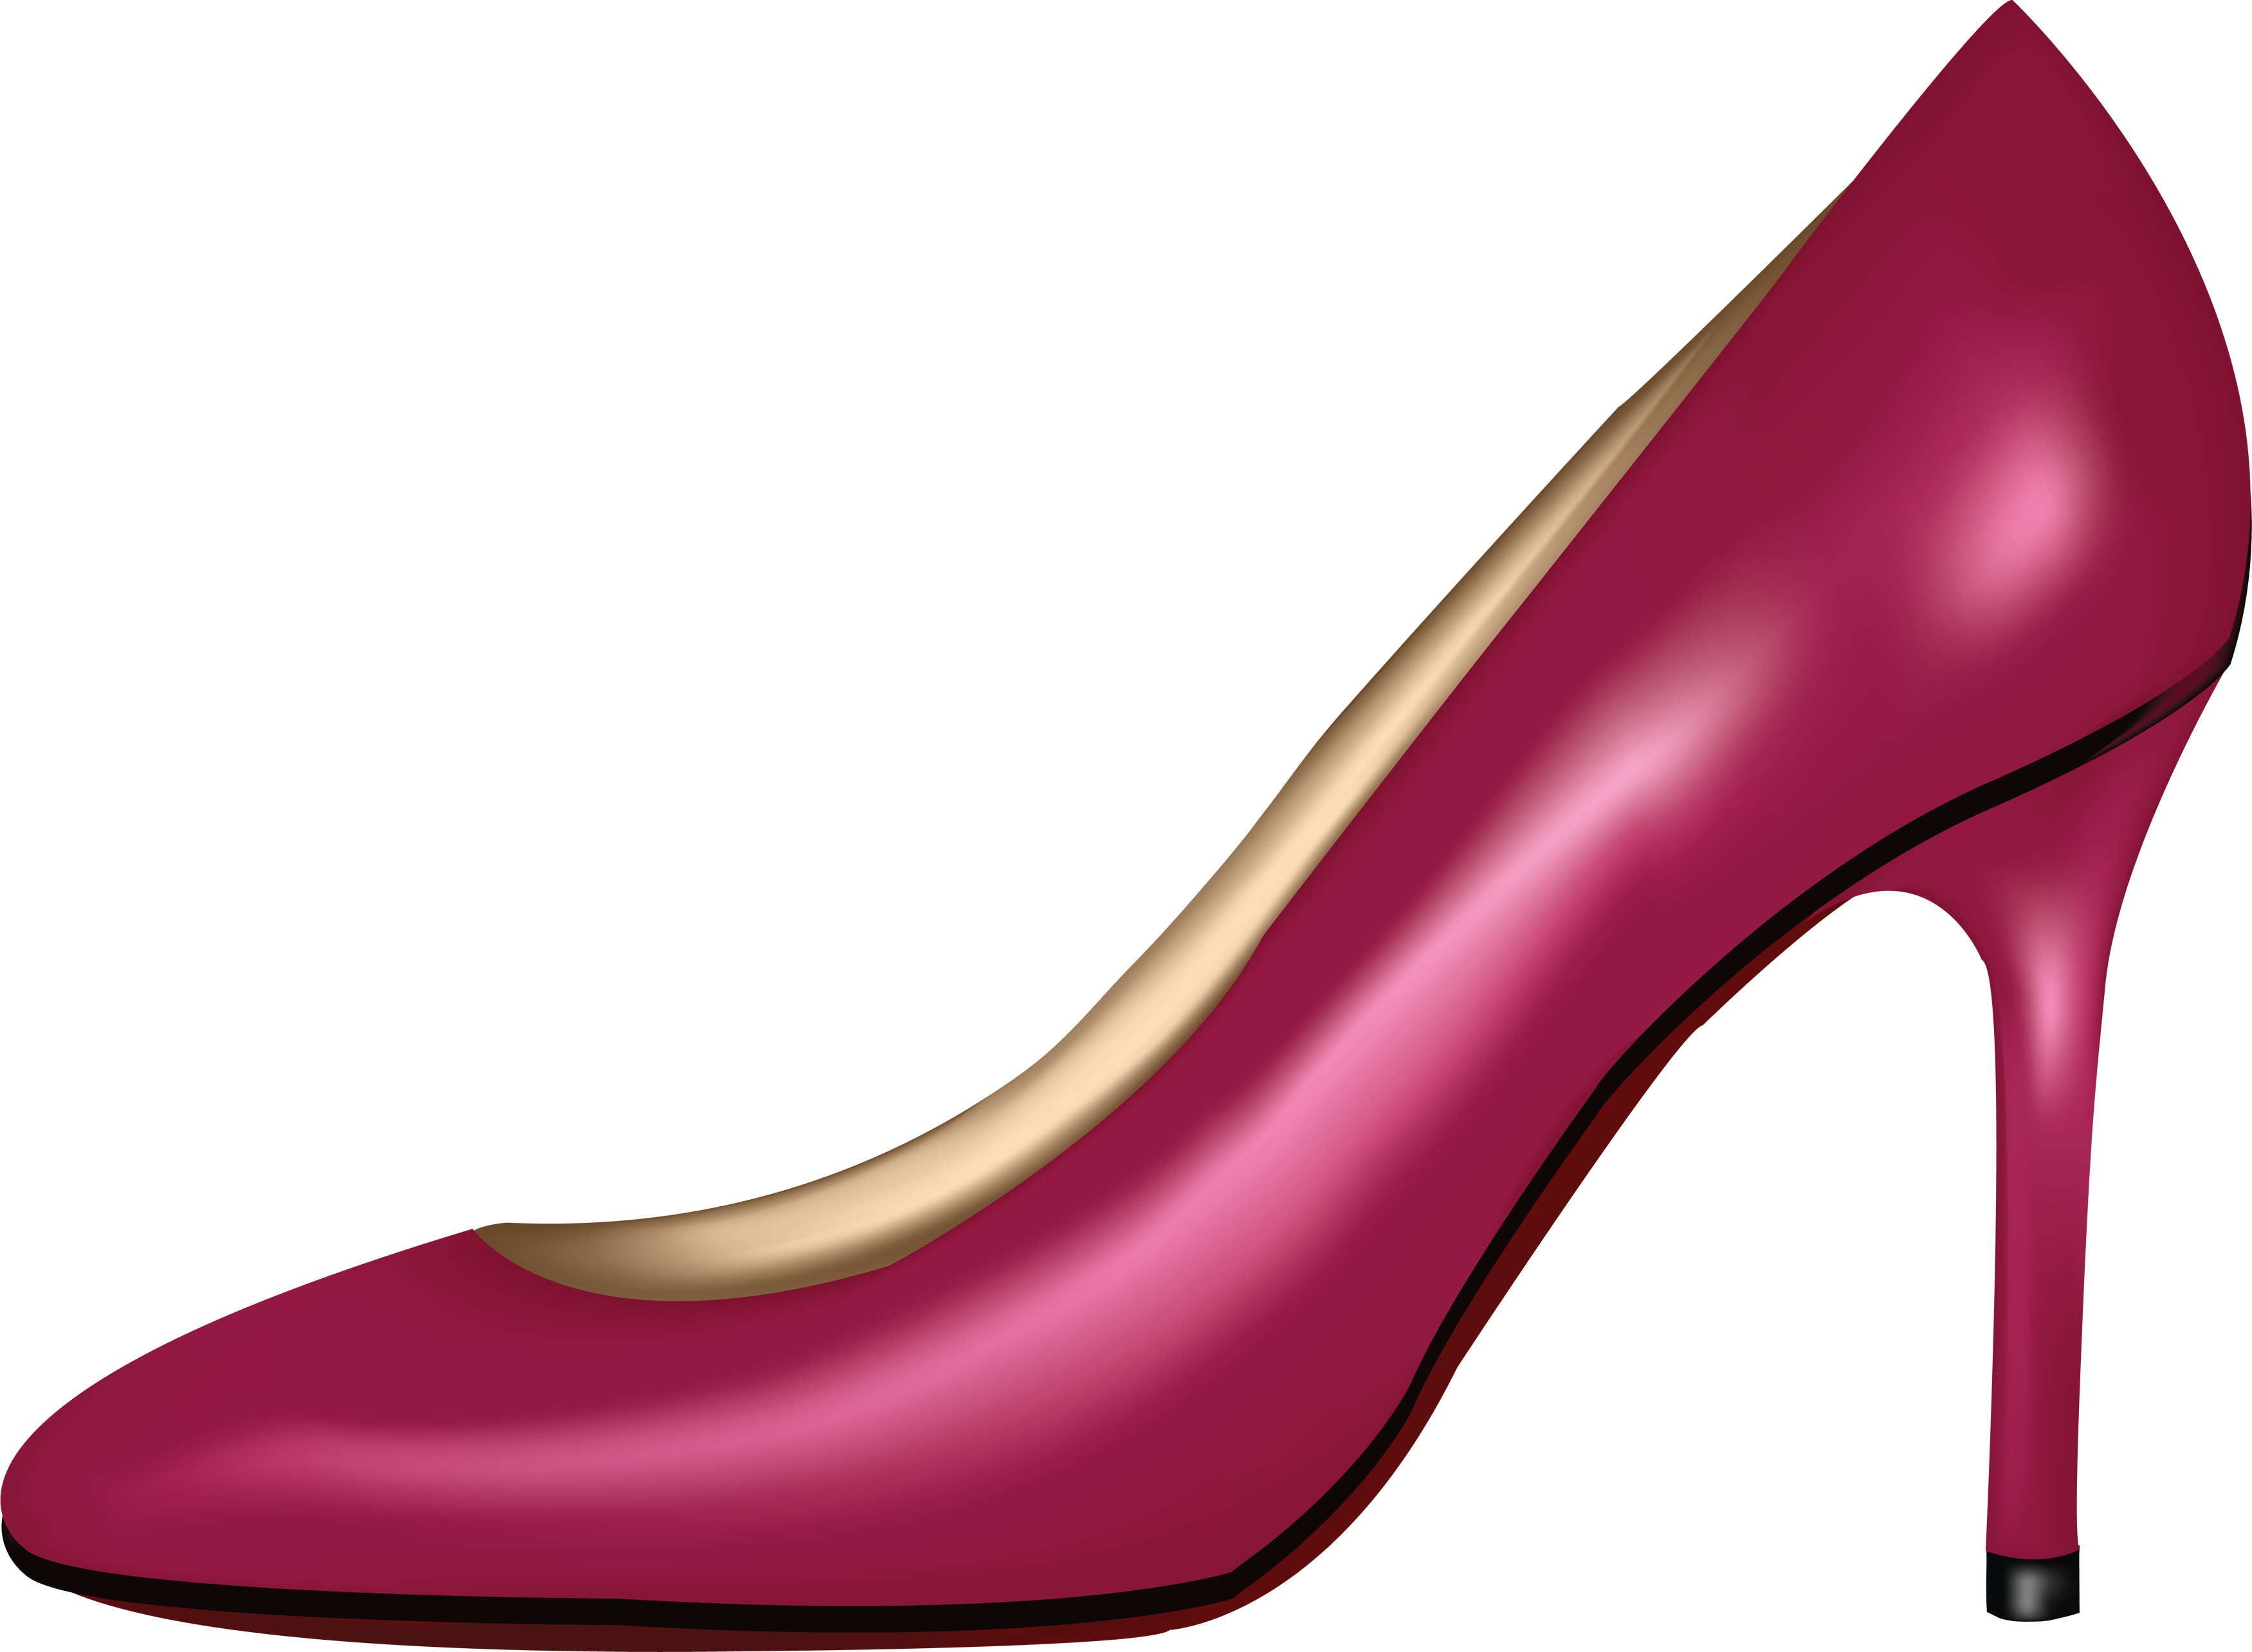 women shoes PNG7470 